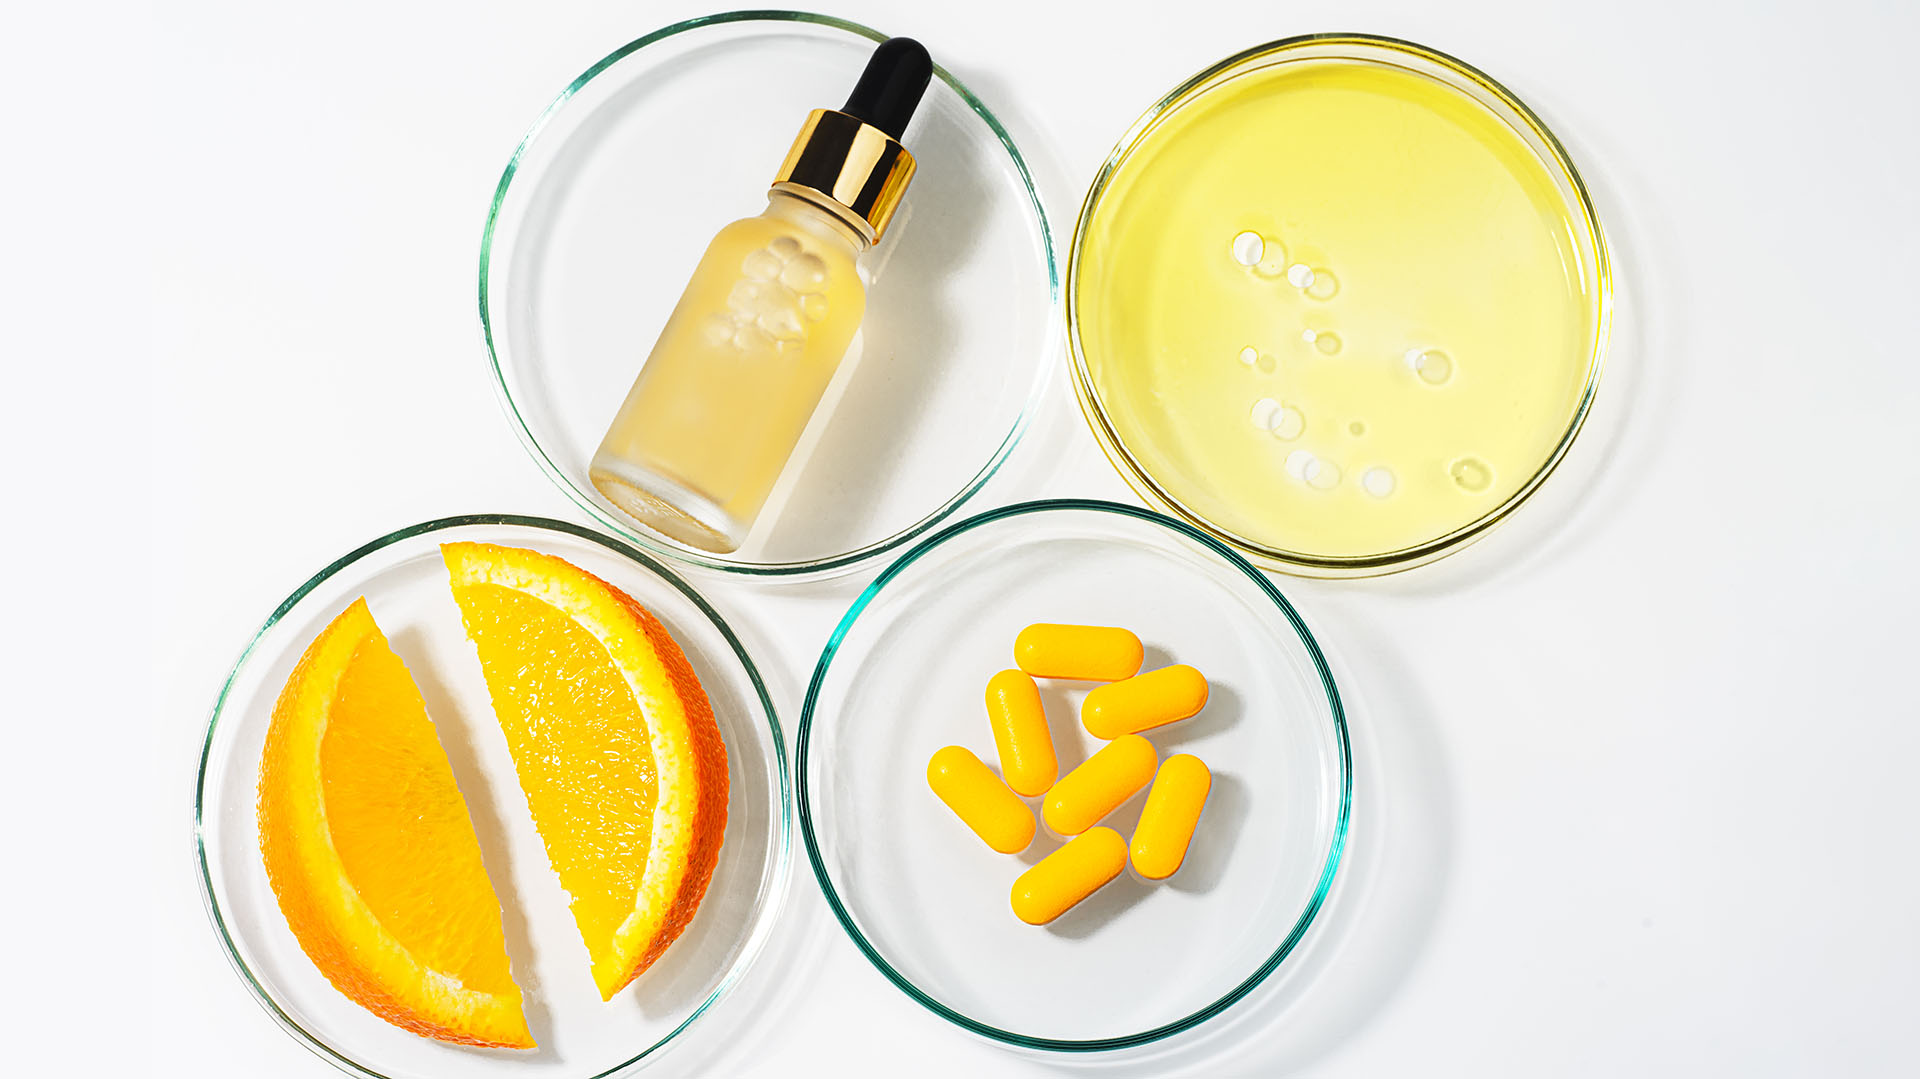 La vitamina C es un gran antioxidante y aliado de la piel, famoso por aportar “calma” al rostro con su uso (Getty Images)